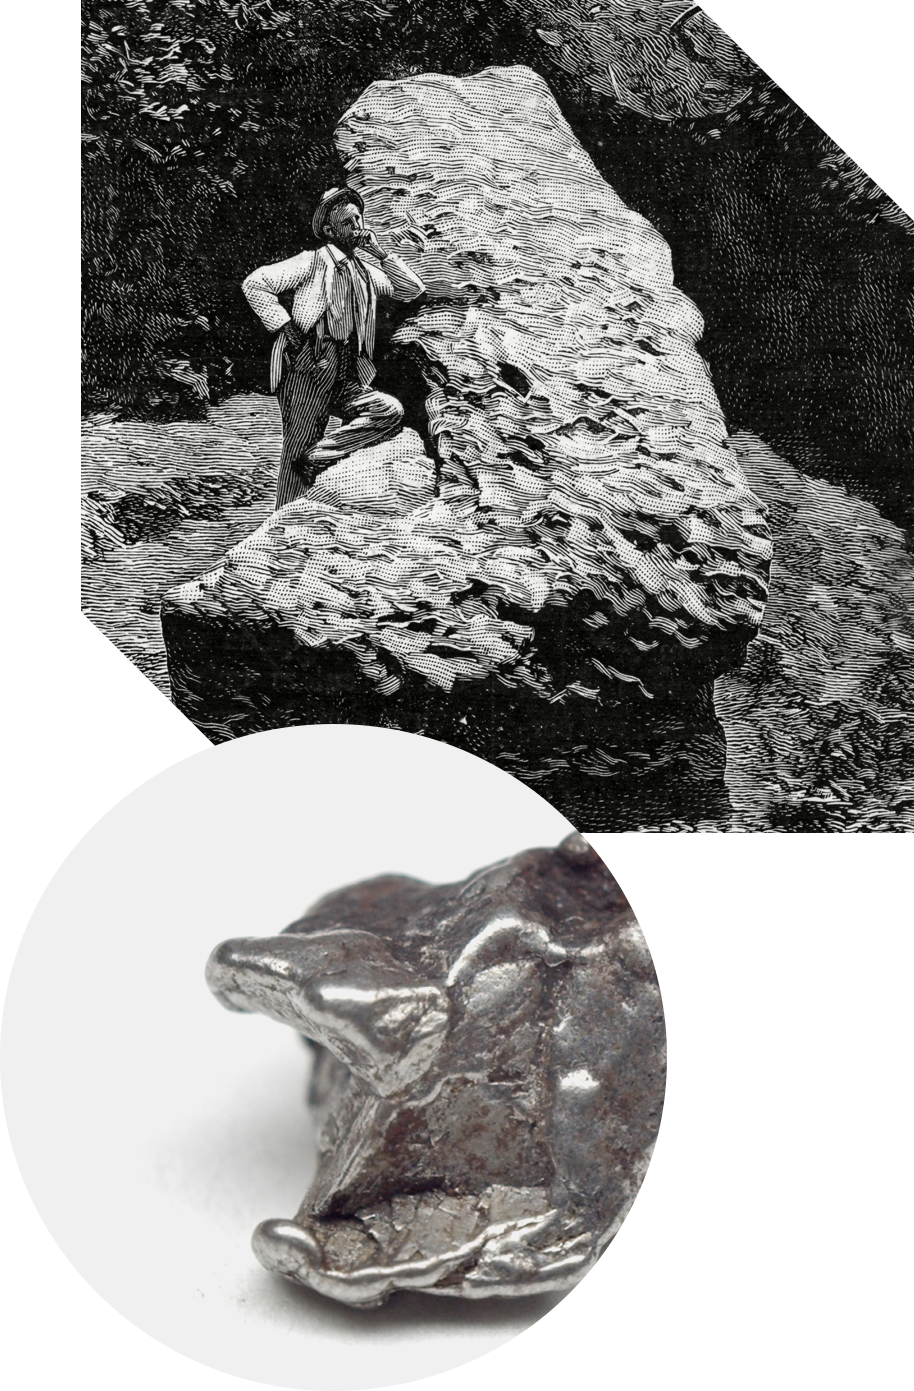 La météorite de Saint-Aubin provient de la collection de M. Labenne, chasseur de météorites. Etant de type ferreux, à sa découpe, des copeaux de météorite ont été agglutinés par la suite autour d’un petit aimant.